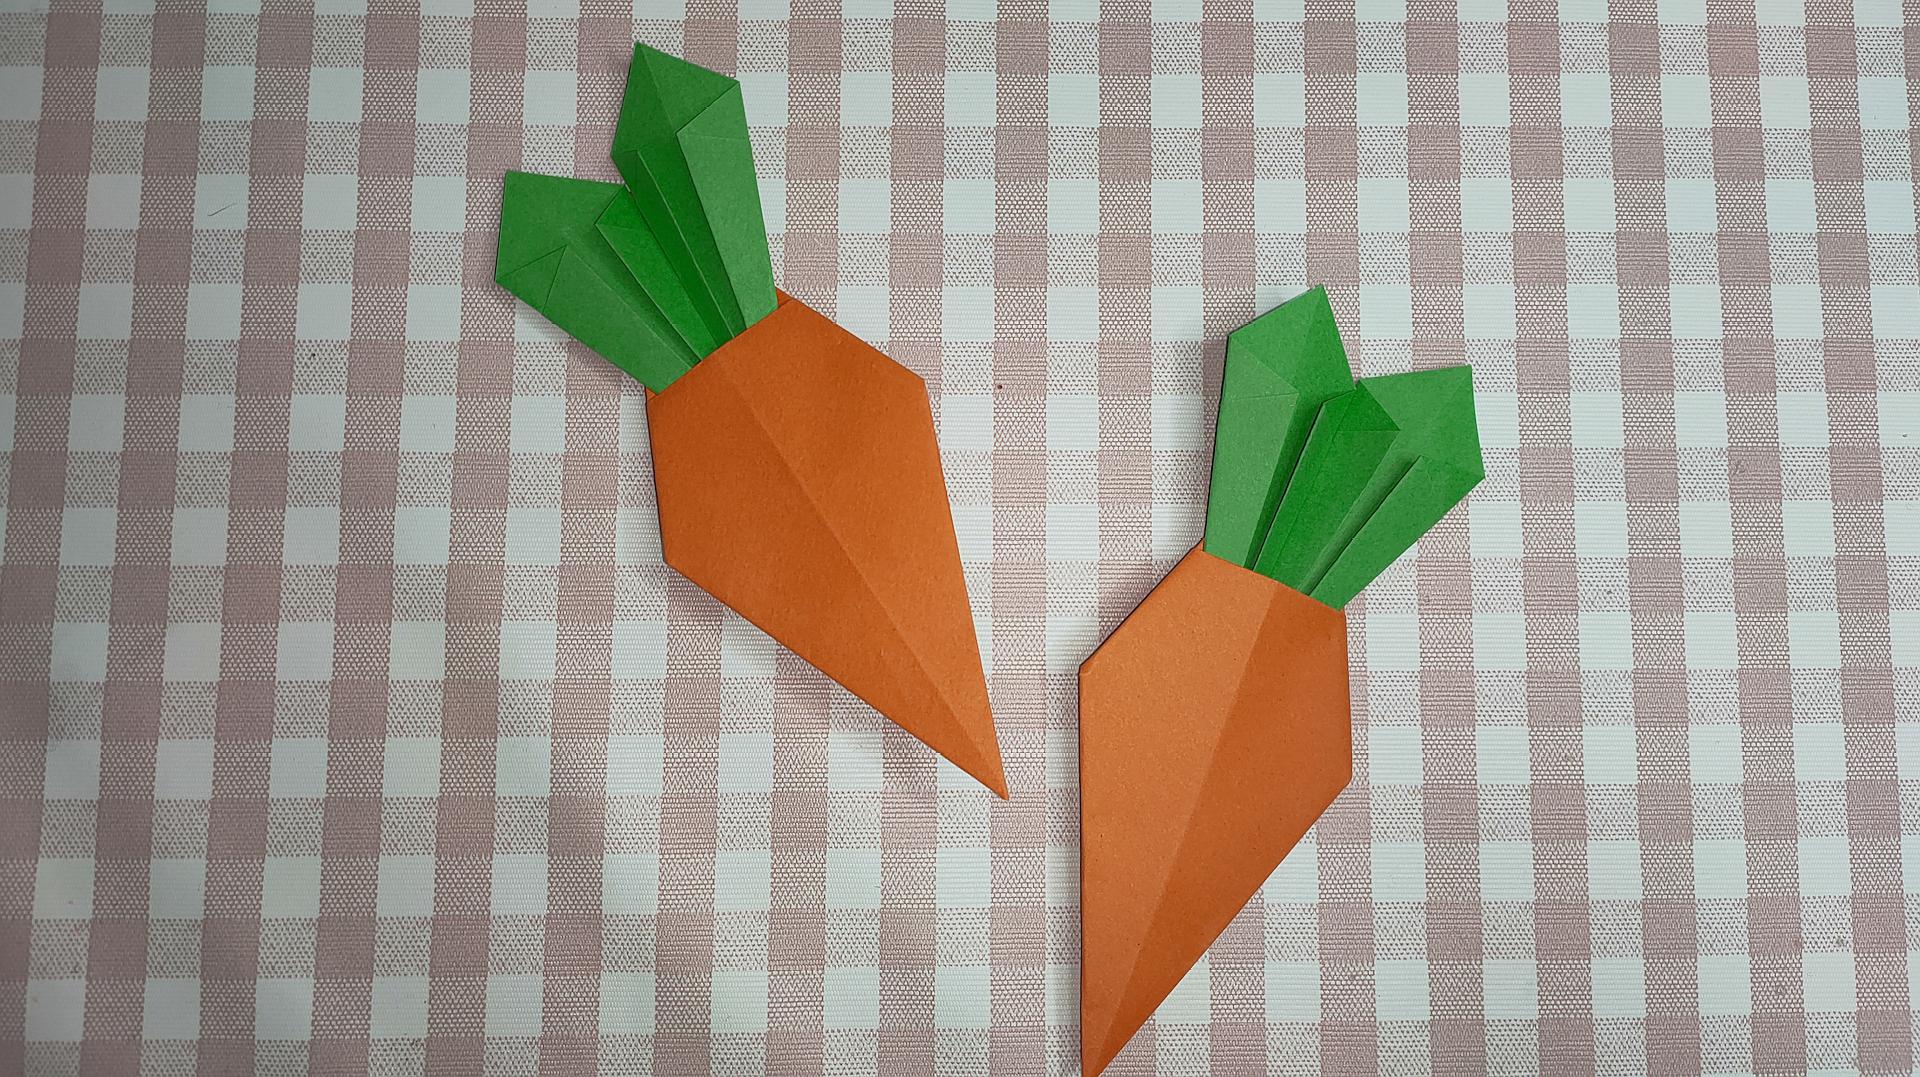 幼儿园手工折纸胡萝卜,折法简单漂亮小朋友都喜欢,折纸教程